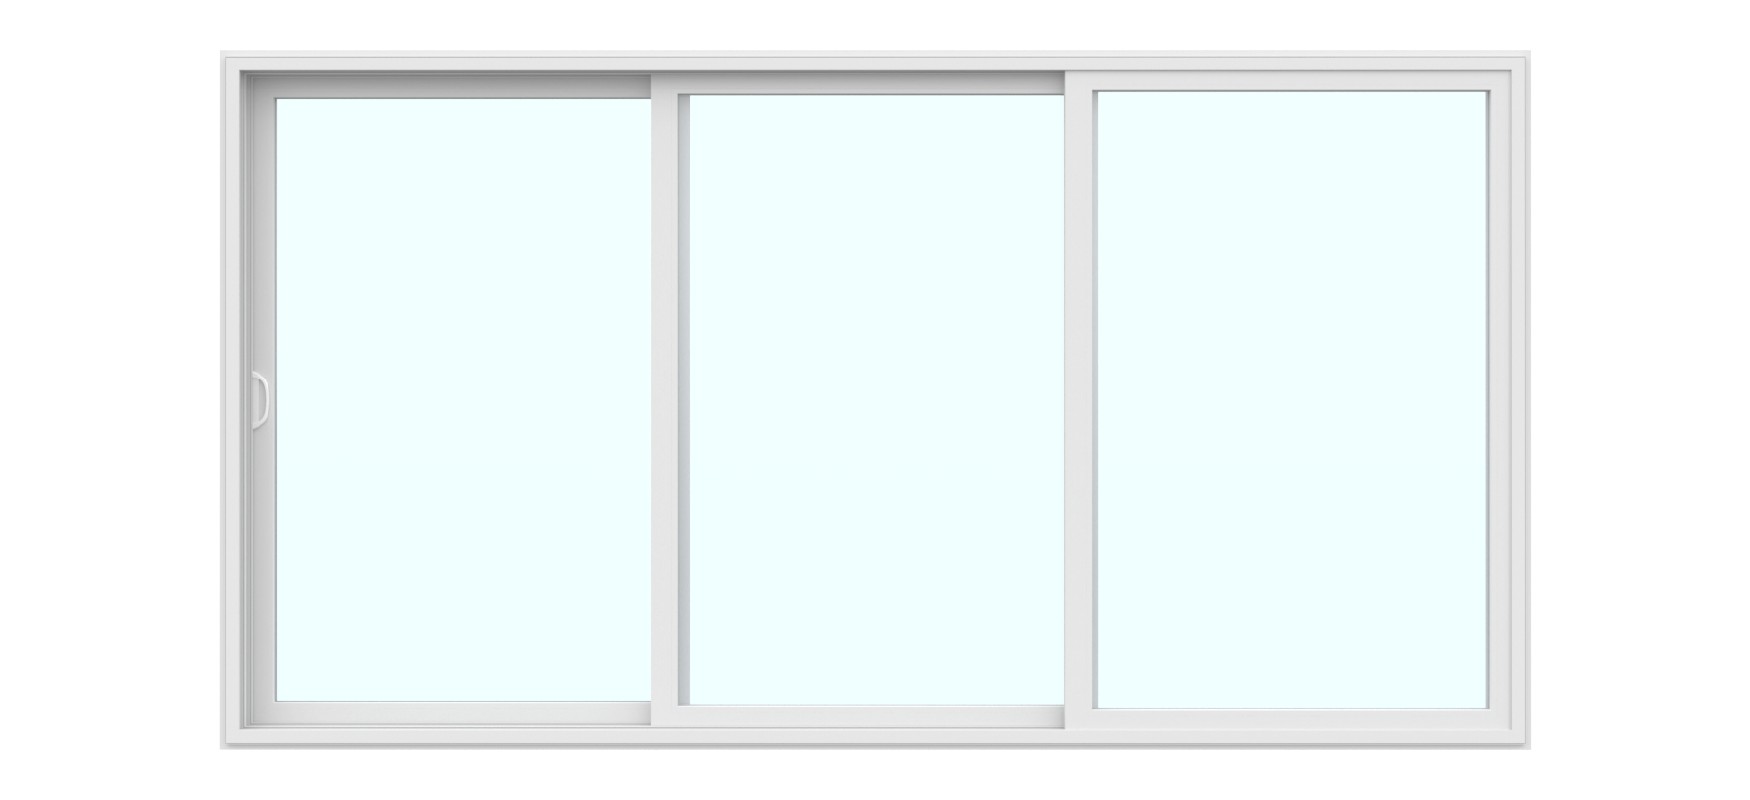 New Horizon 3 Panel Patio Door